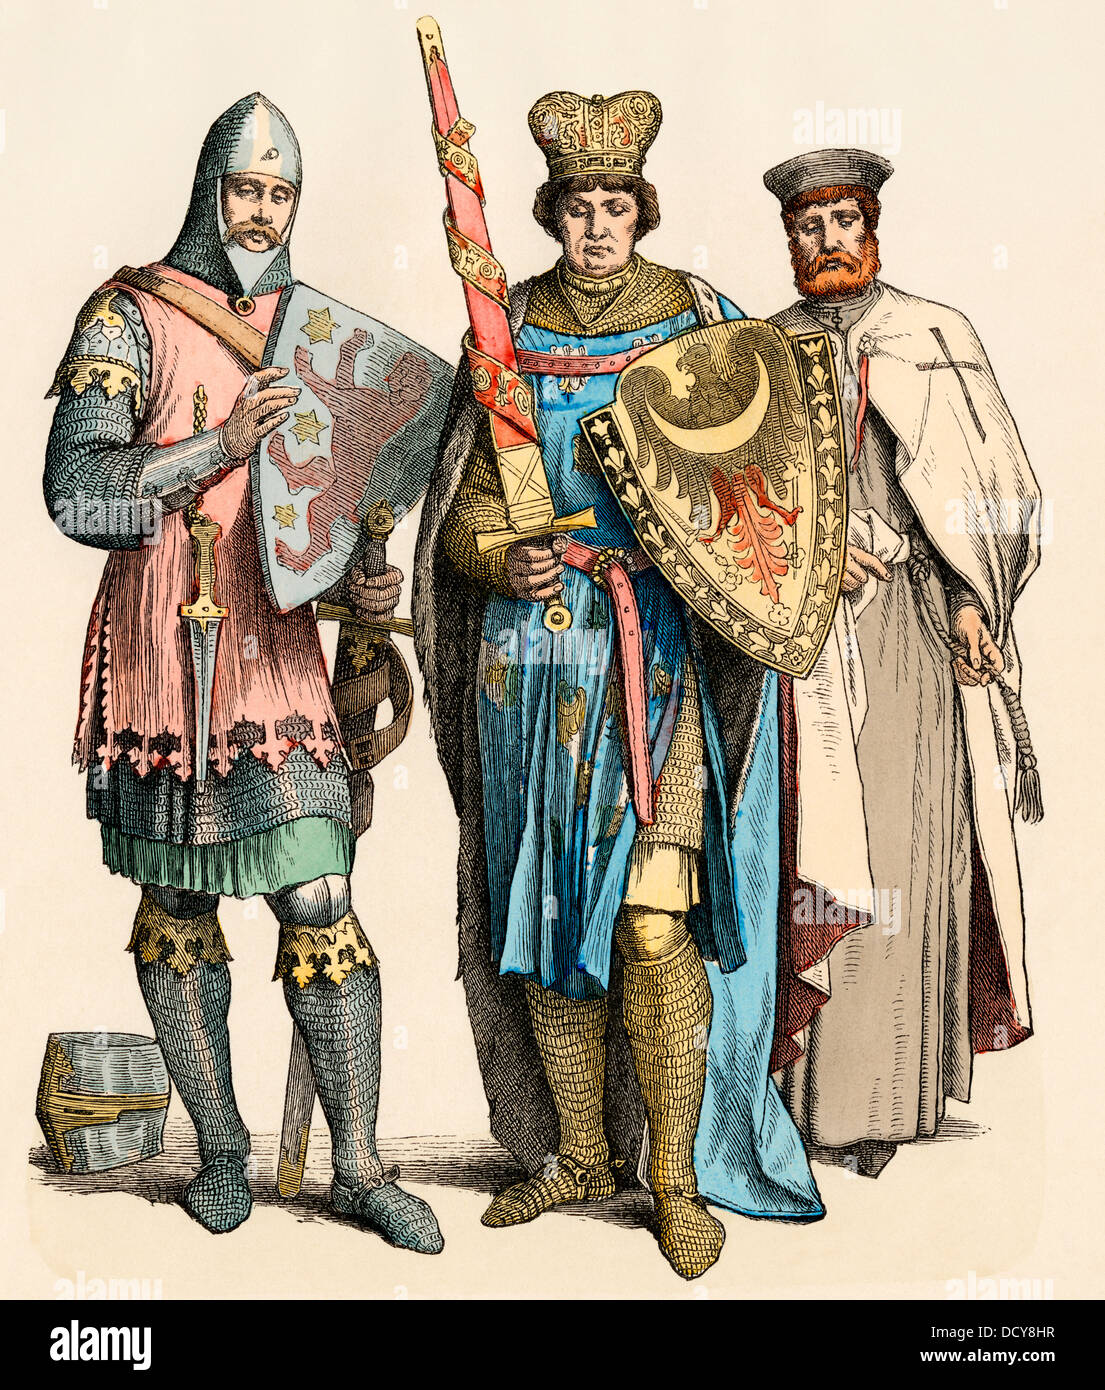 Caballero Medieval, el príncipe y caballero templario (izquierda-derecha). Mano de color imprimir Foto de stock